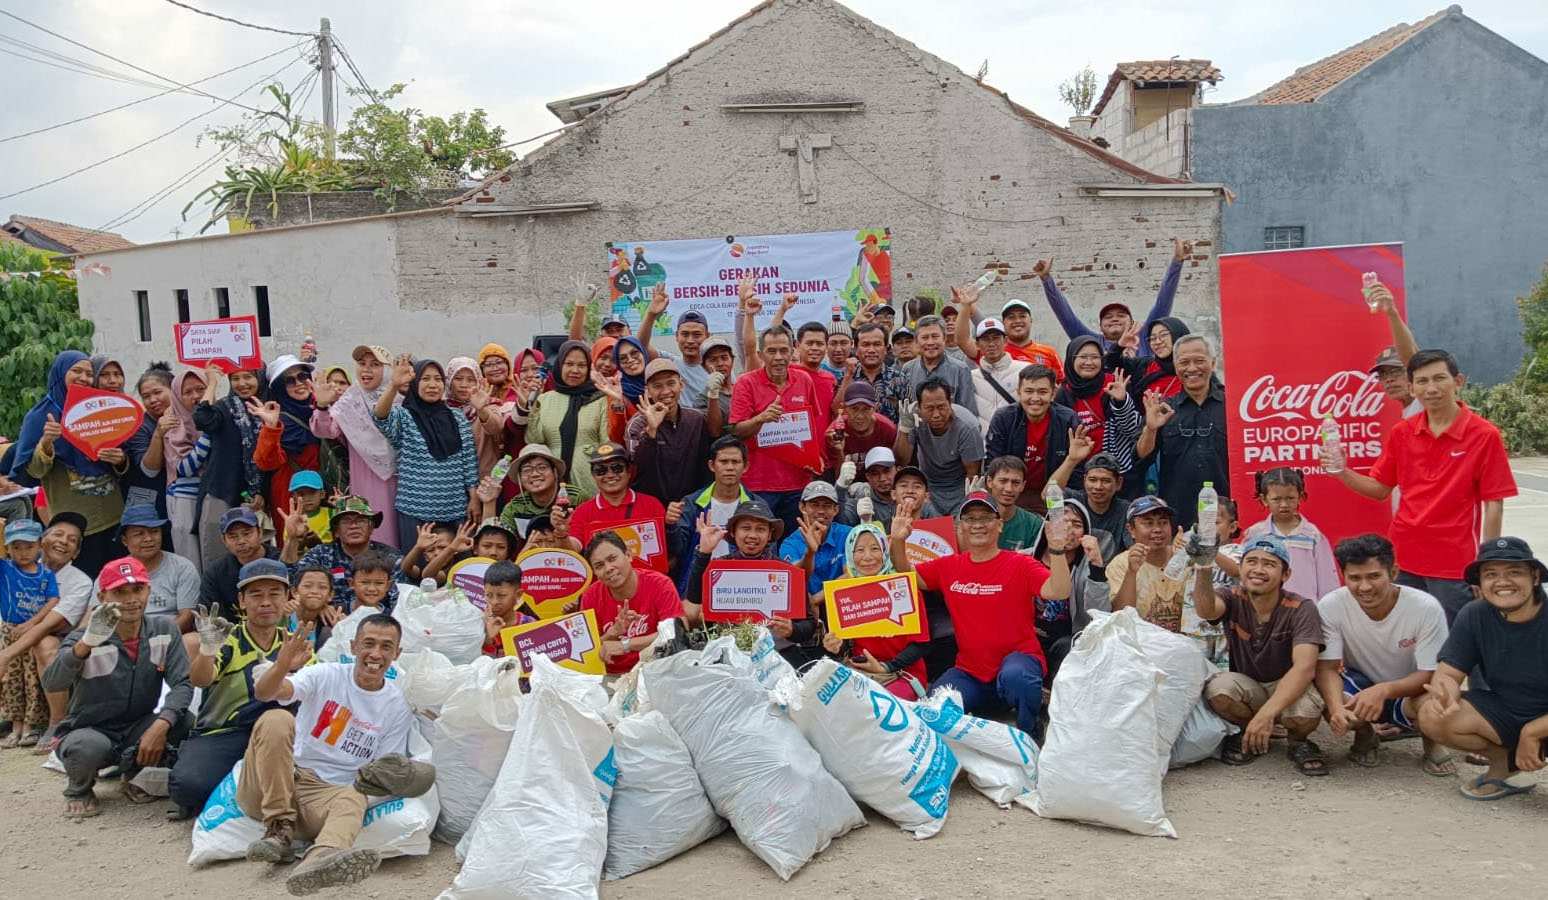 CCEP Indonesia Adakan Gerakan Bersih-Bersih Serentak di 10 Kota Libatkan 1.000 Orang